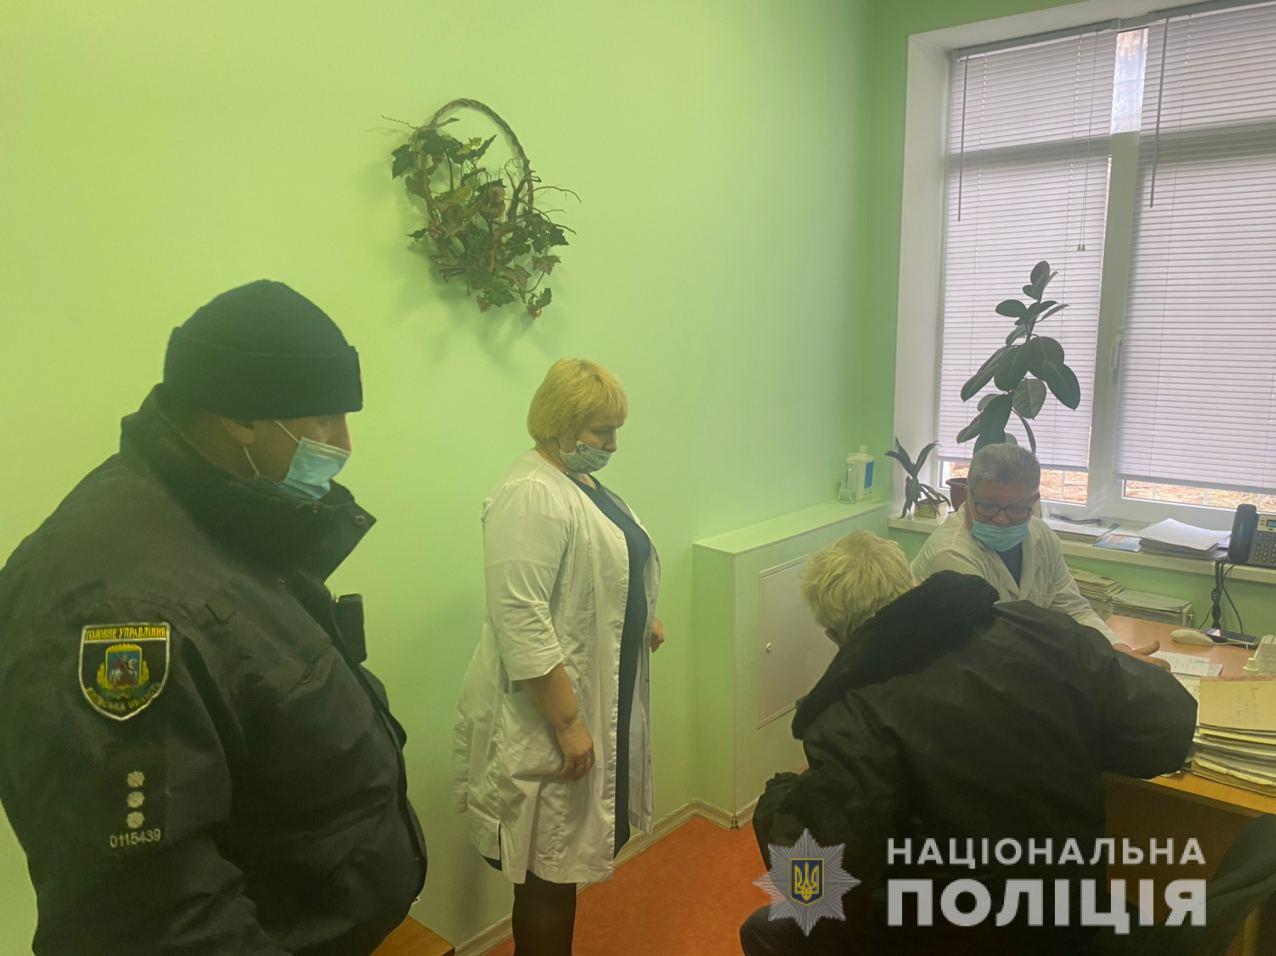 Под Киевом водителя за рулем разбил инсульт